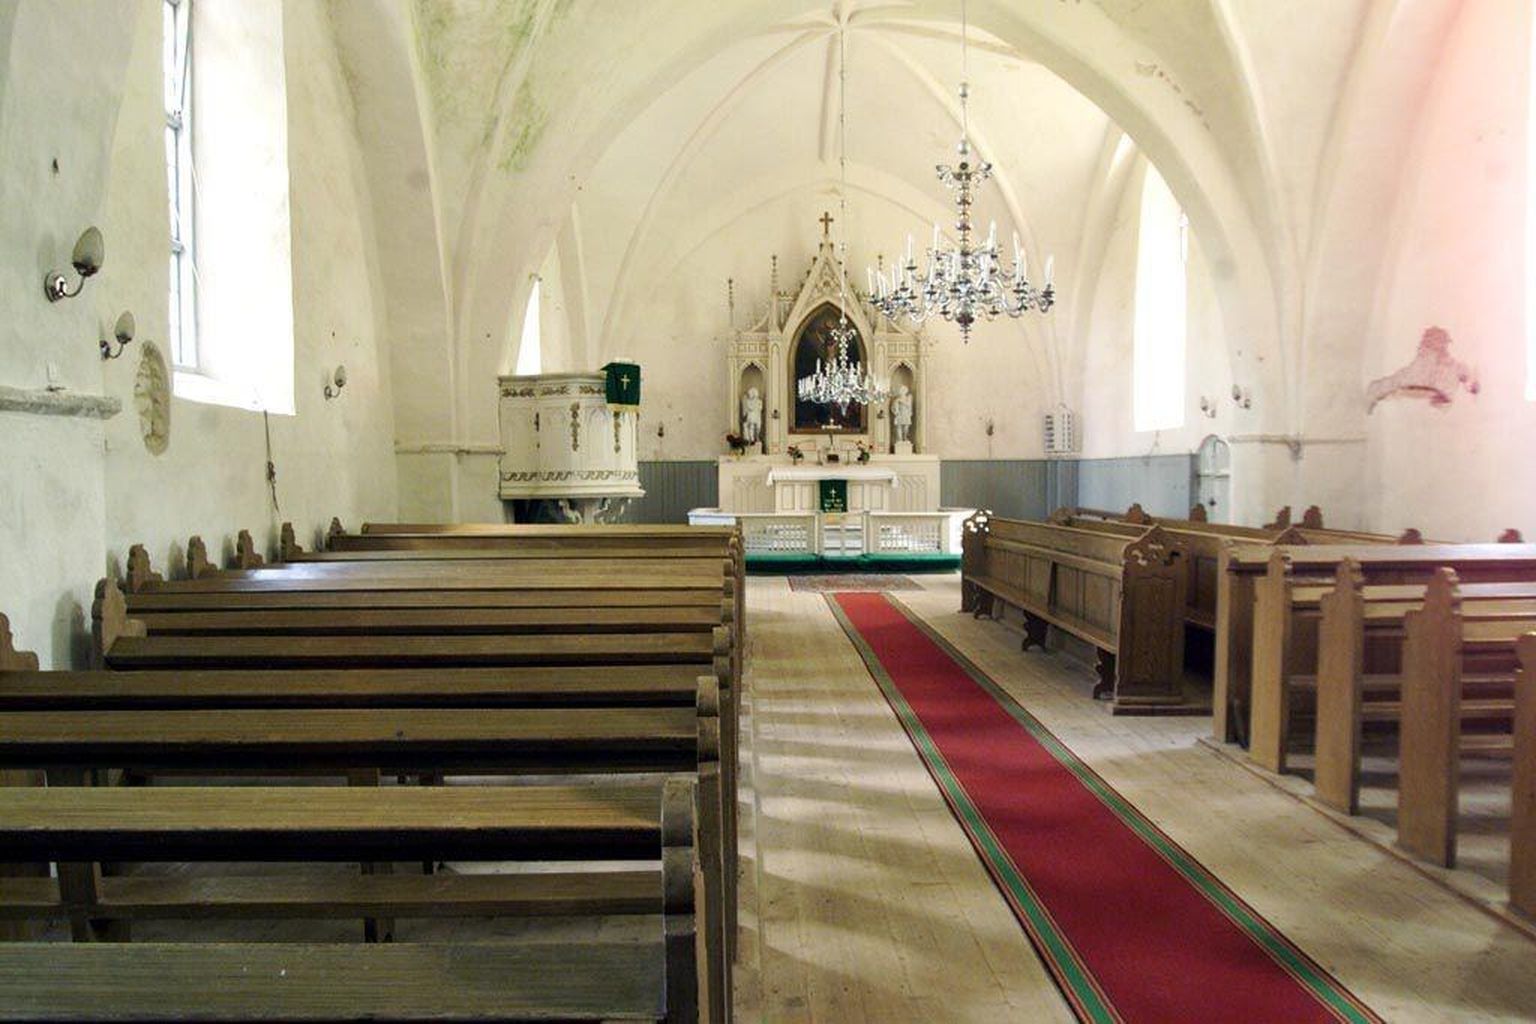 Mihkli kirik on ehitatud Soontagana muinaskihelkonda 13. sajandil ja on Lääne-Eestis vanimaid pühakodasid, kus aastasadu teenistusi peetud.